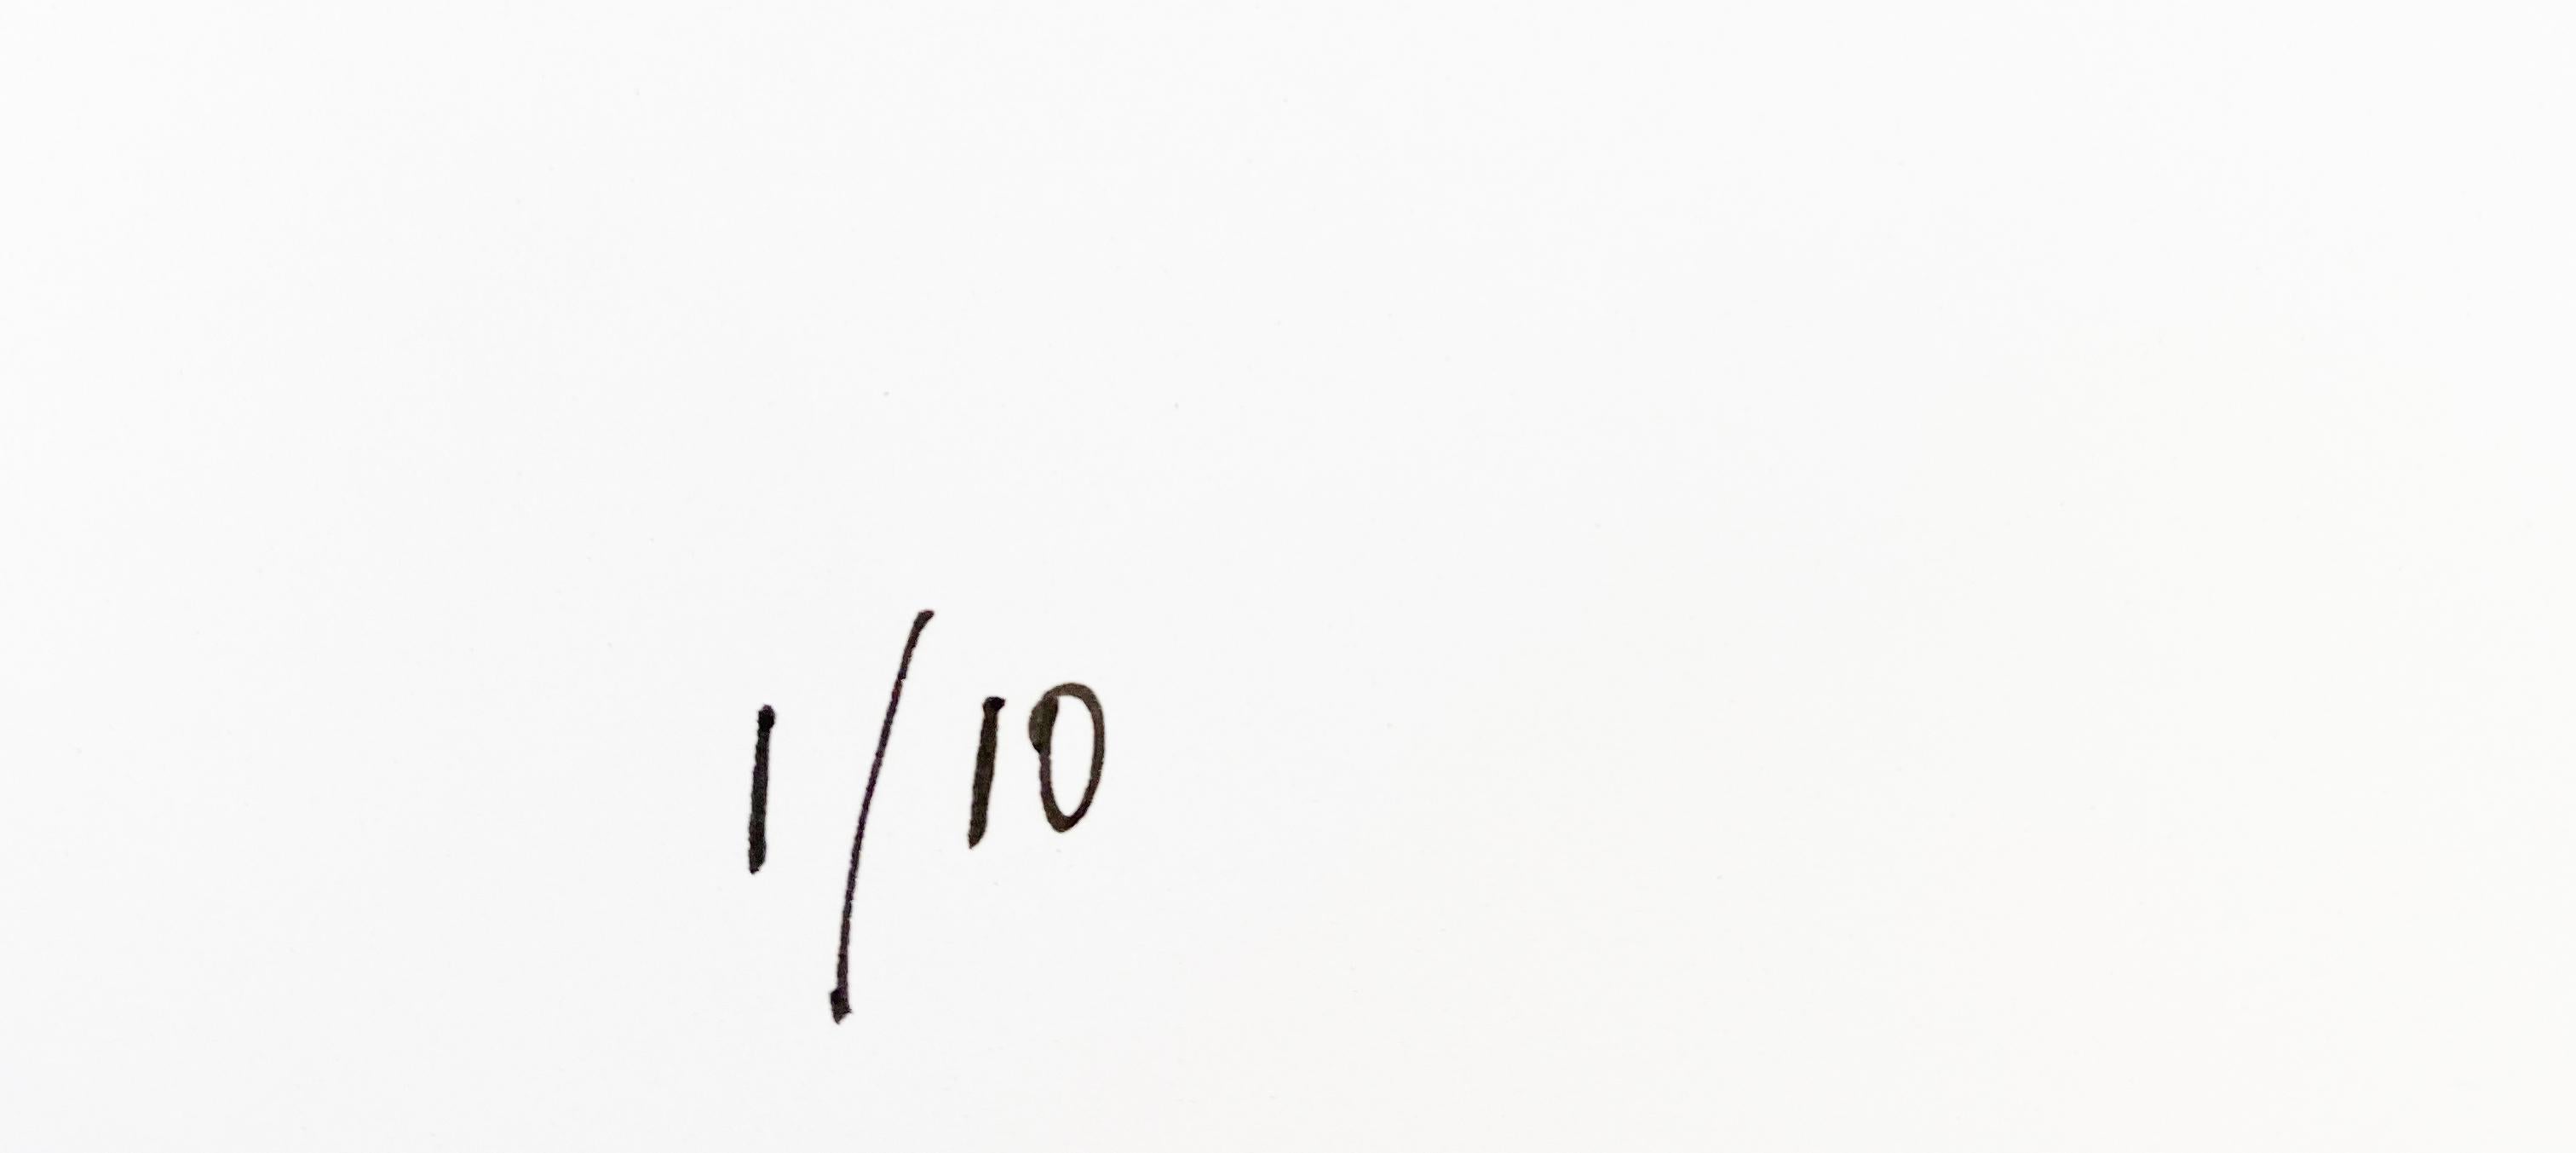 Ohh Baby!  - Übergröße Signiert Limitierte Auflage - Pop Art - Kate Moss

der in London ansässigen zeitgenössischen Pop-Art
bildschöpfer und Künstler, BATIK.

Maßnahmen  40 x 30